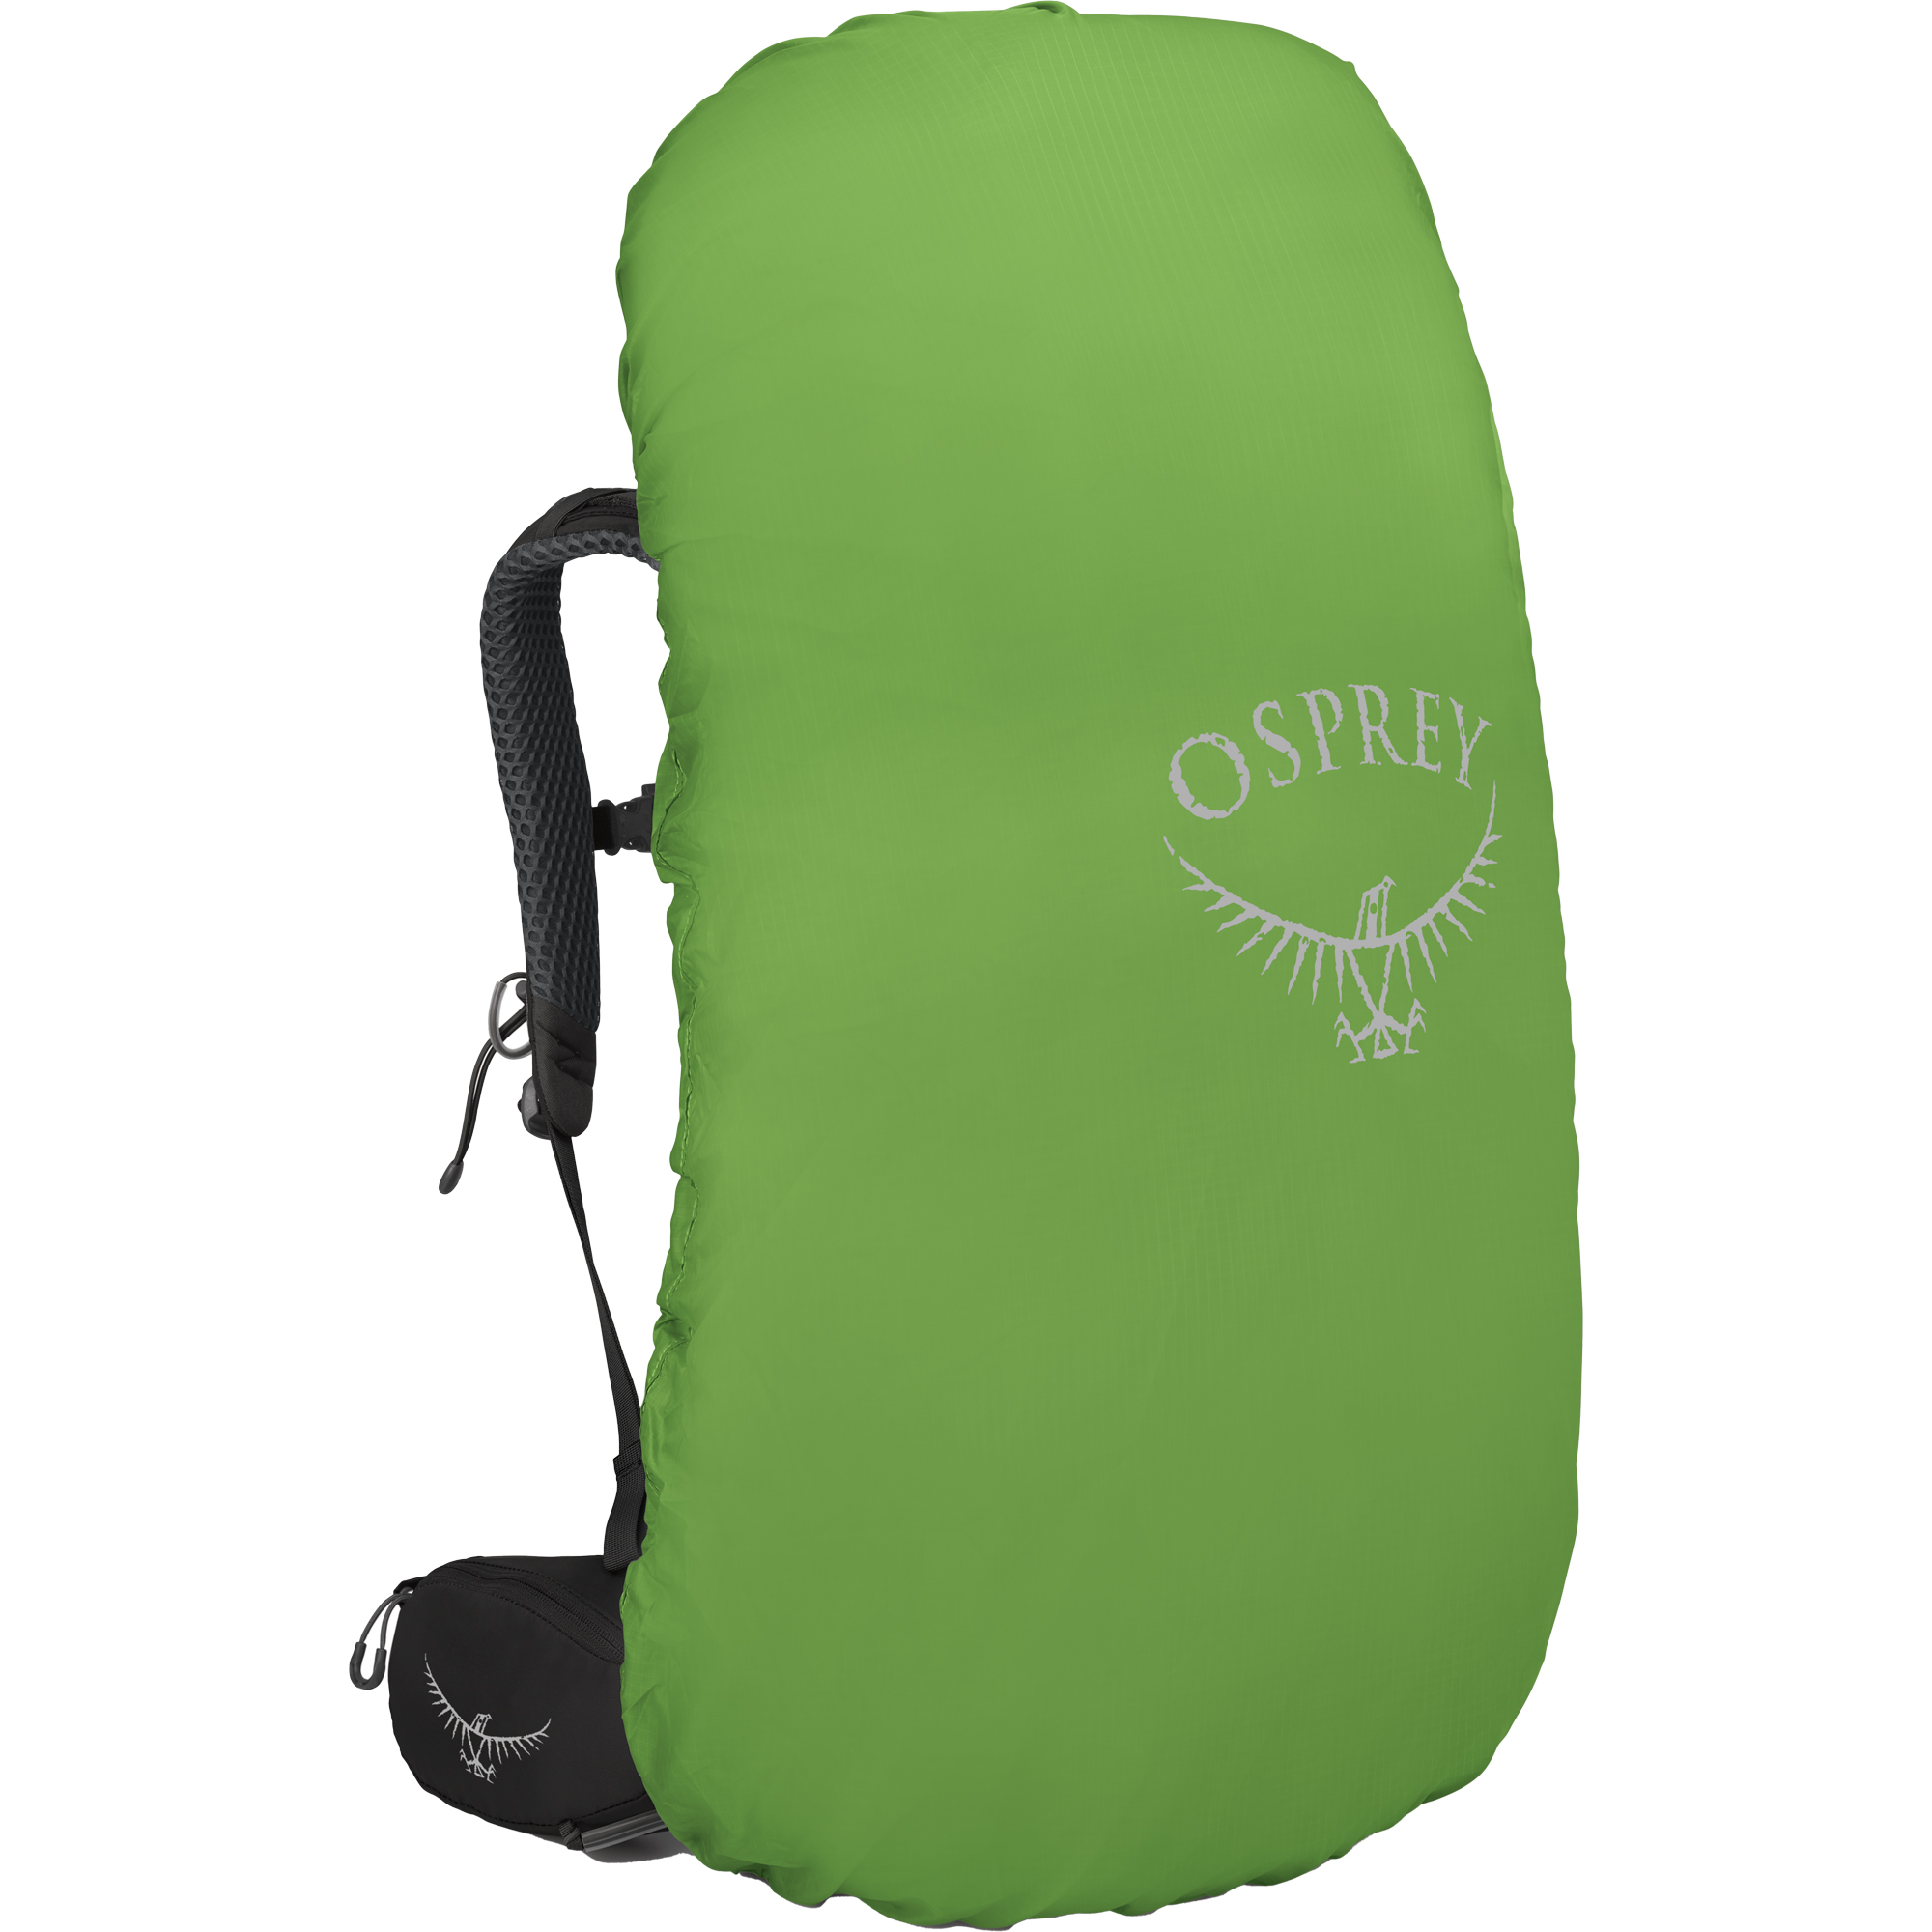 Osprey Kyte 68 Women's Trekking Pack